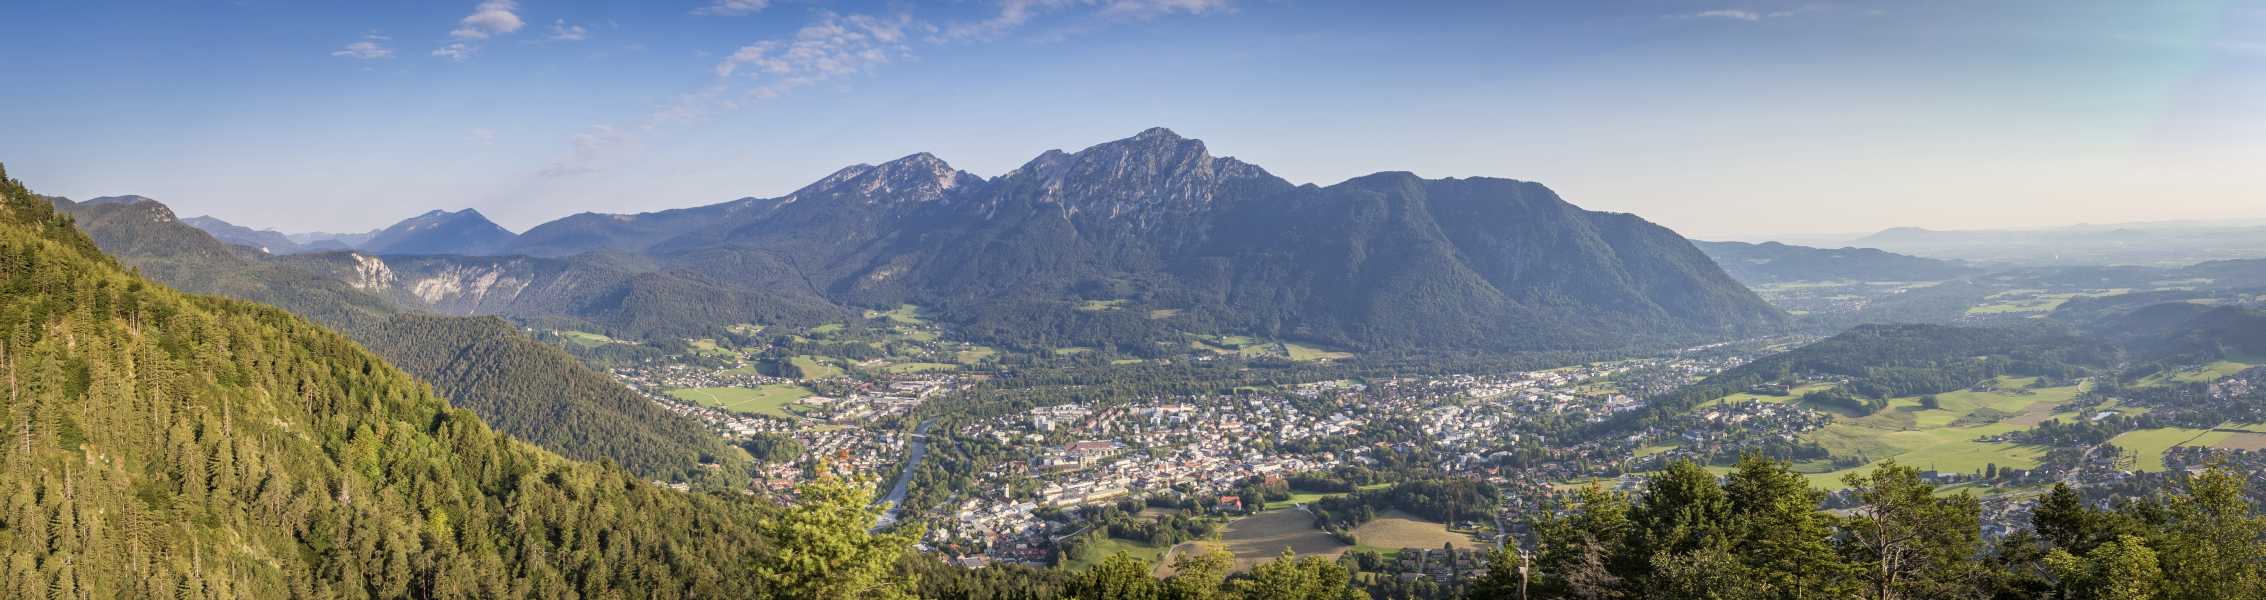 Bad Reichenhall im Herzen des Berchtesgadener Land